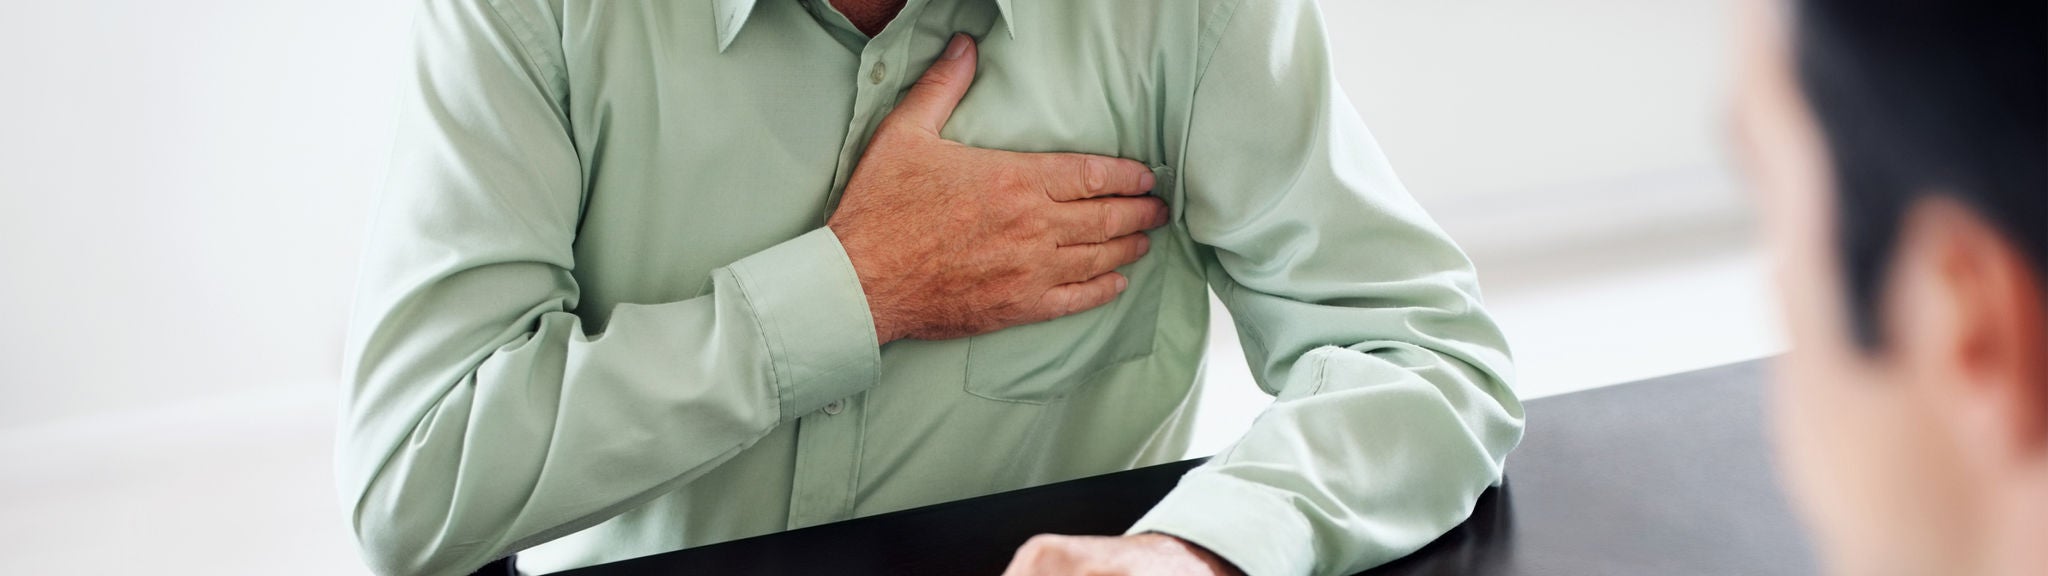 Ein Mann hält die Hand an die schmerzende Brust.